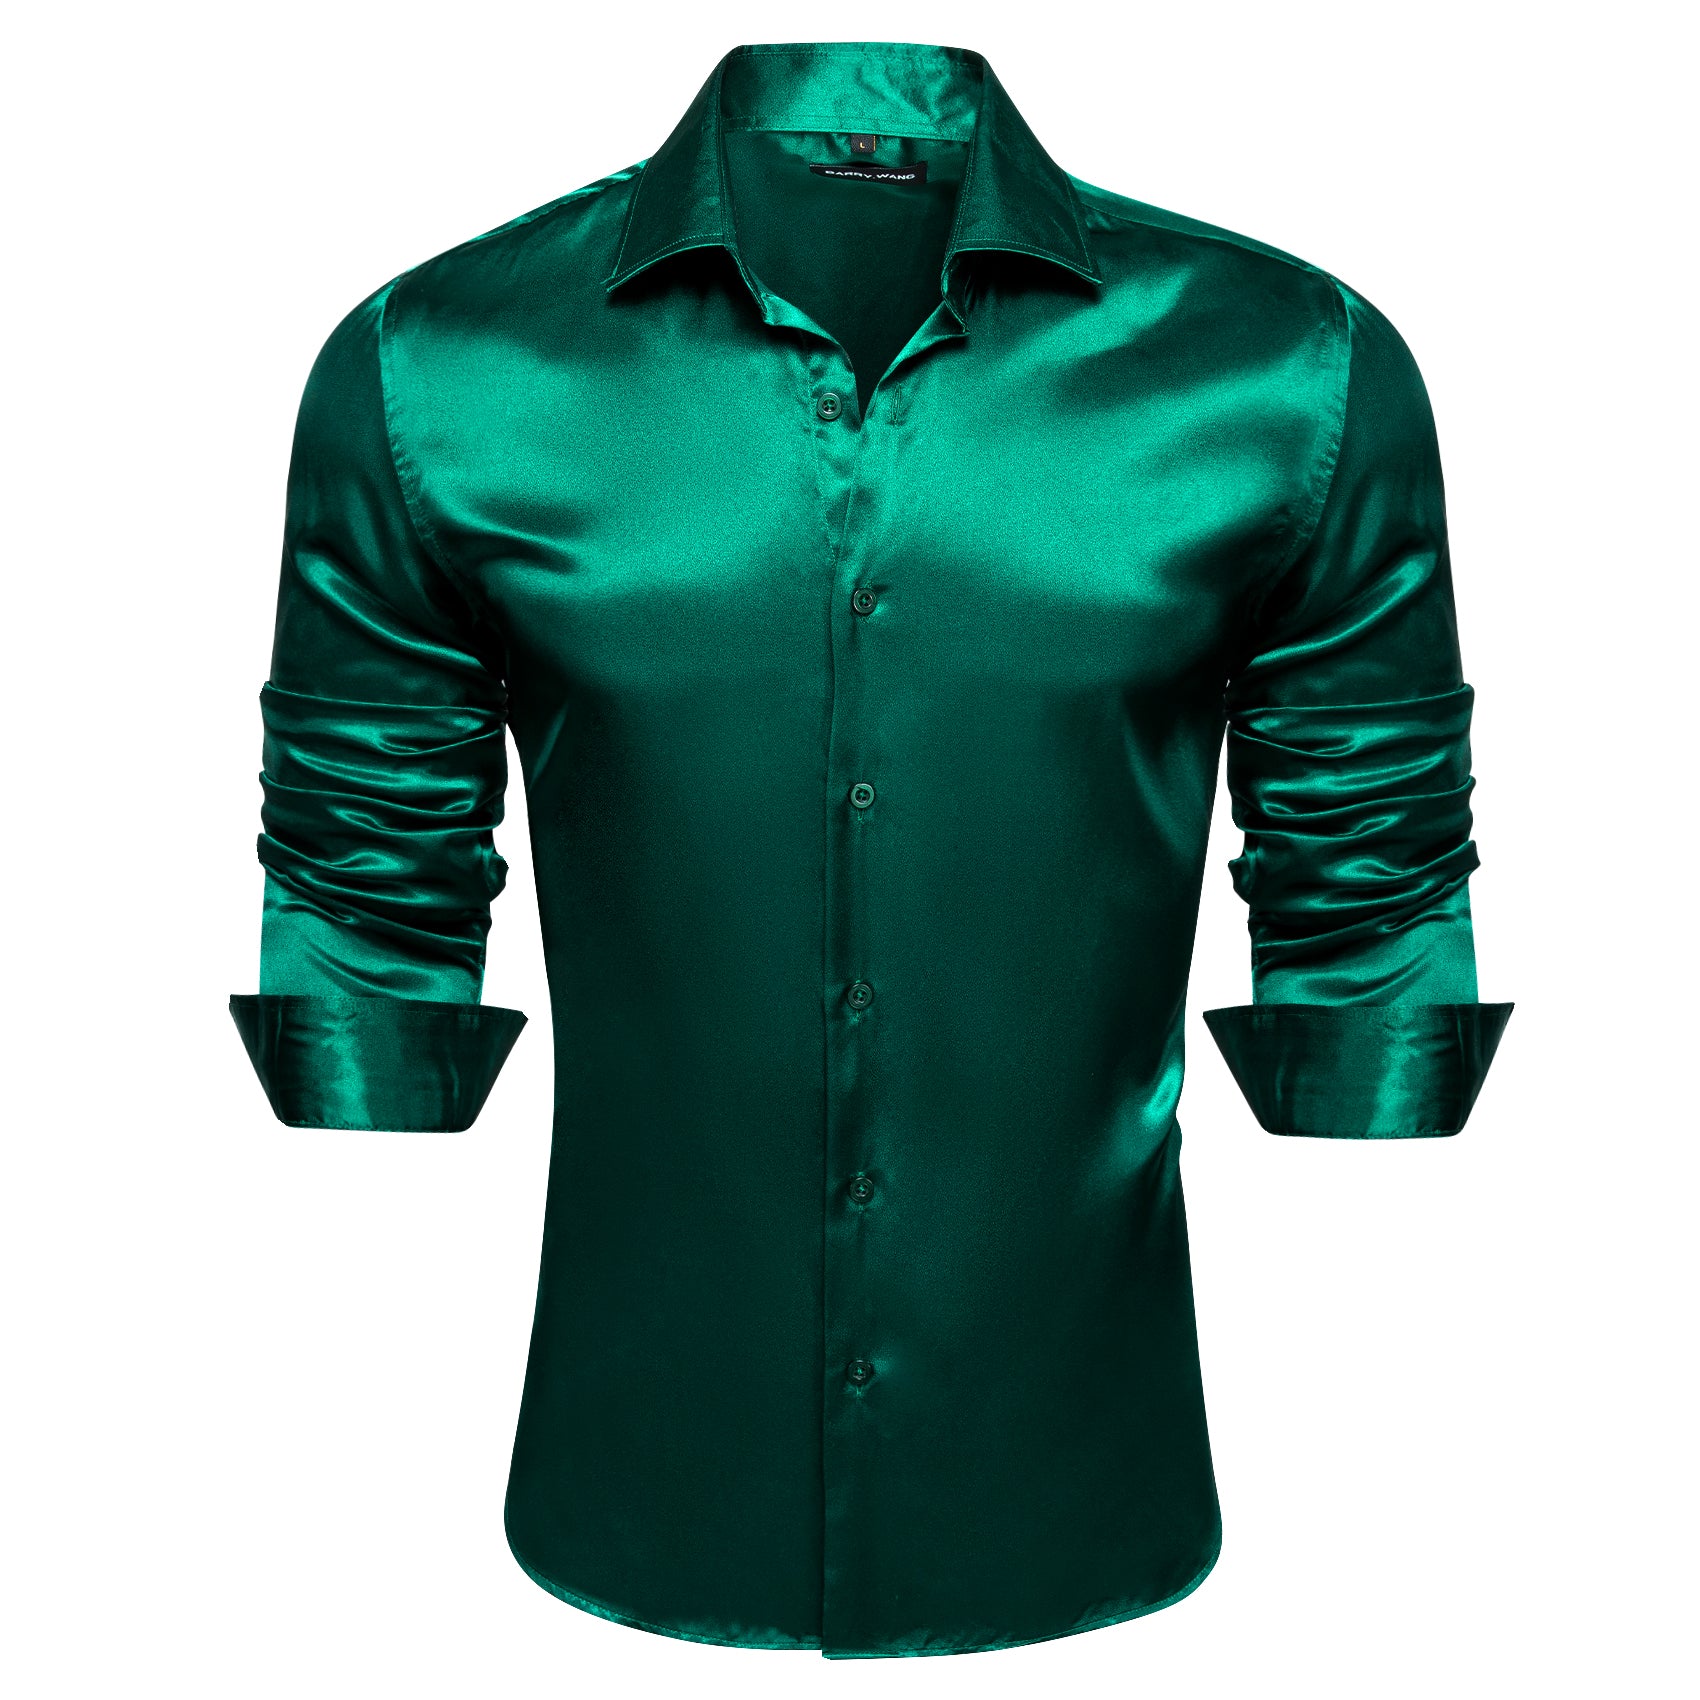 Barry.wang Hot Dark Green Solid Silk Shirt